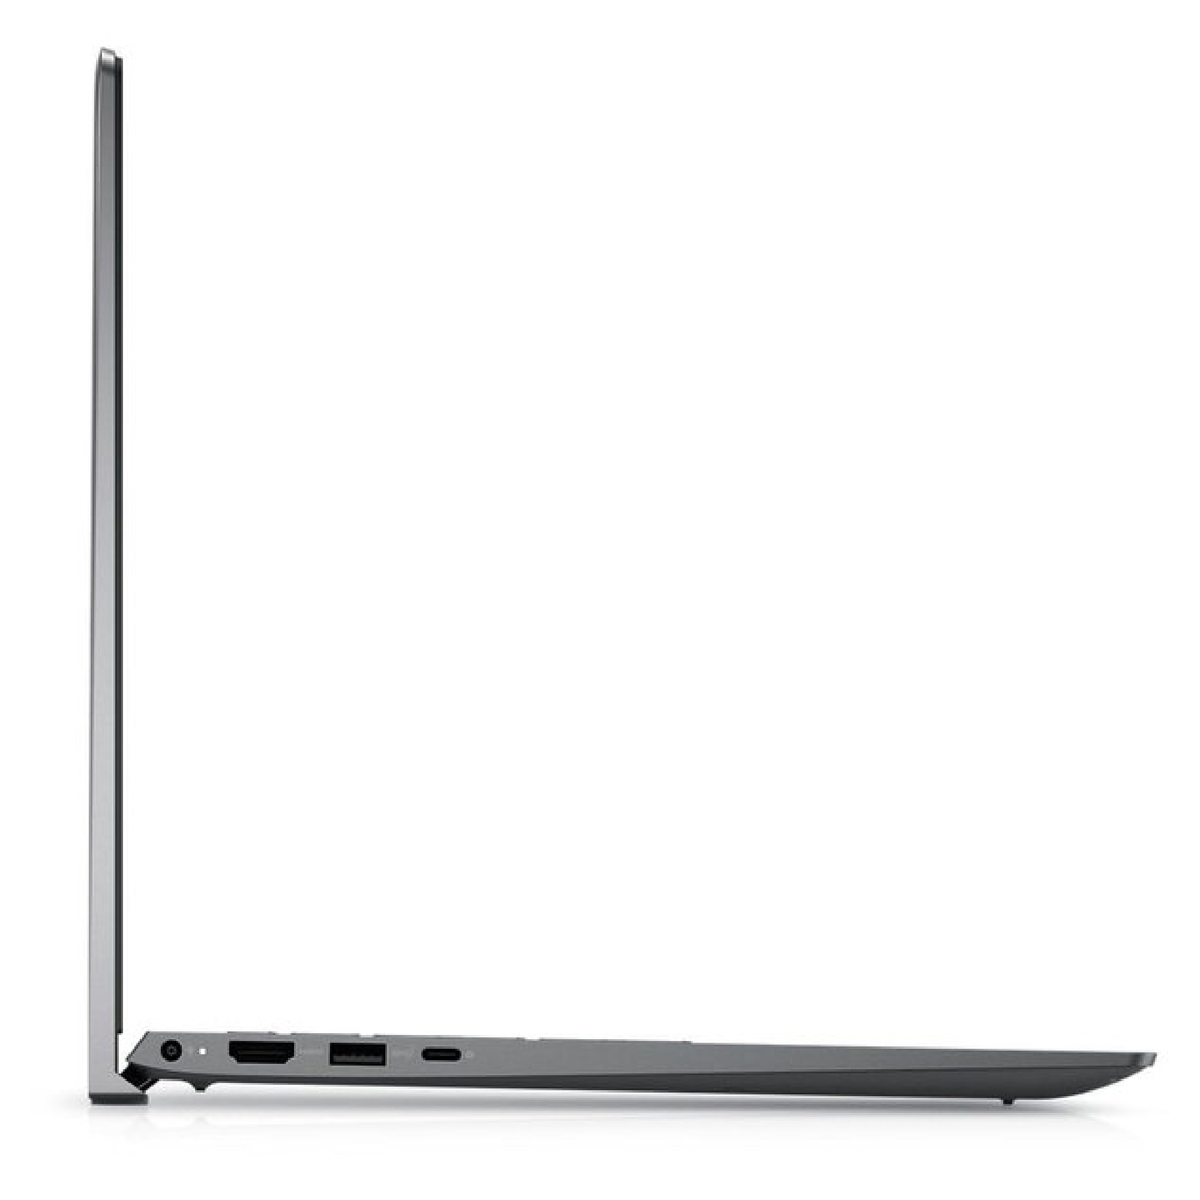 Dell Vostro (5402-VOS-5111-GRY) Laptop,Intel Core i5-1135G7,8GB RAM,512GB SSD,14inches FHD,Windows 11,Grey,English-Arabic Keyboard